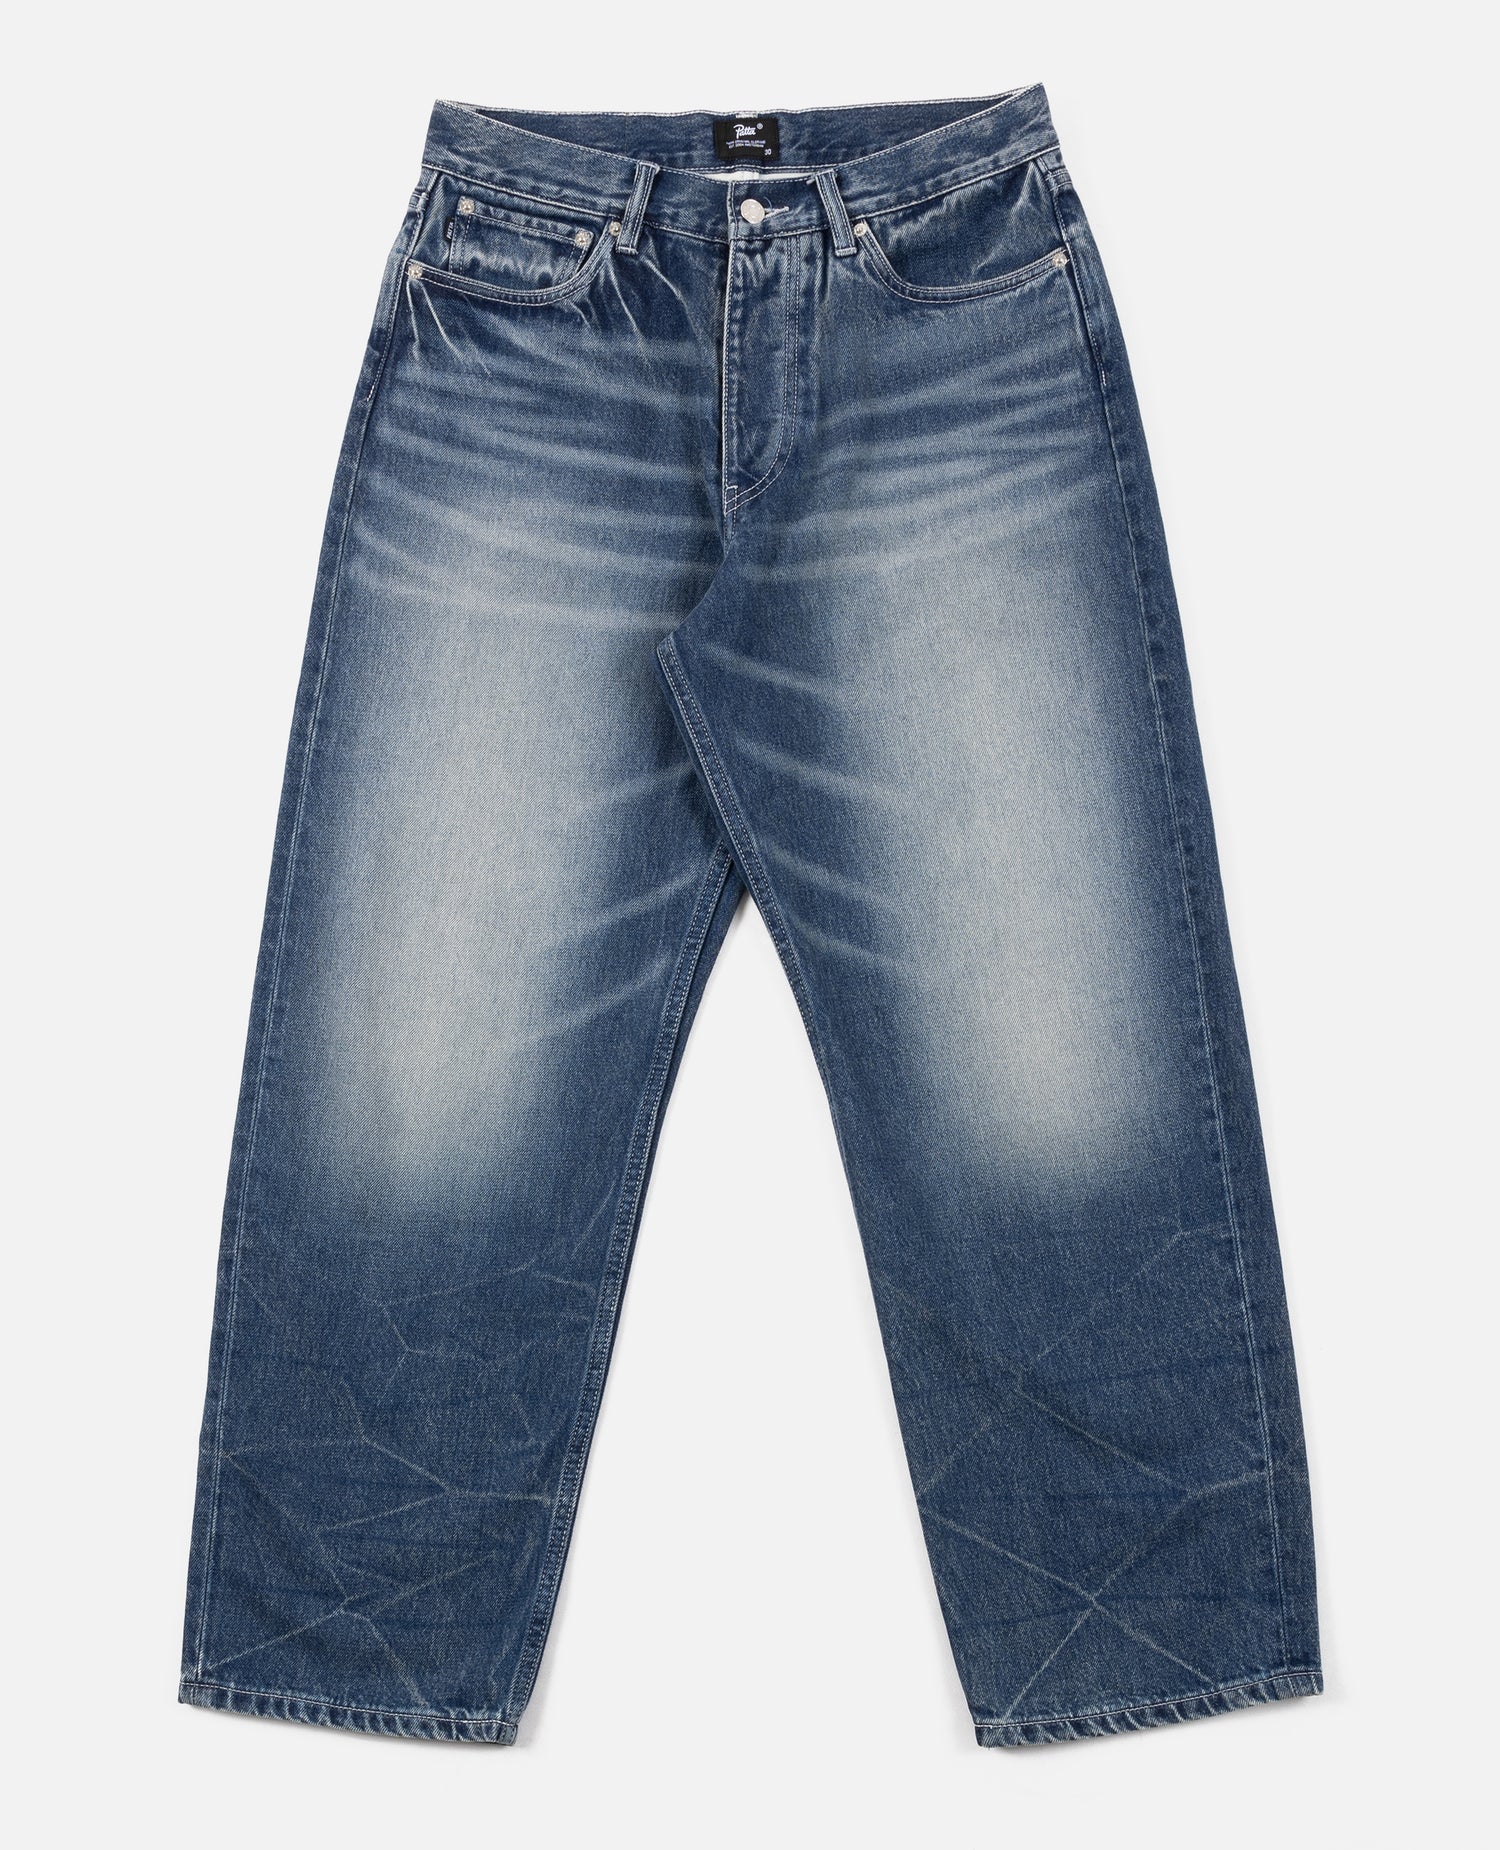 Pantalon en jean coupe ample délavé Patta (bleu denim)